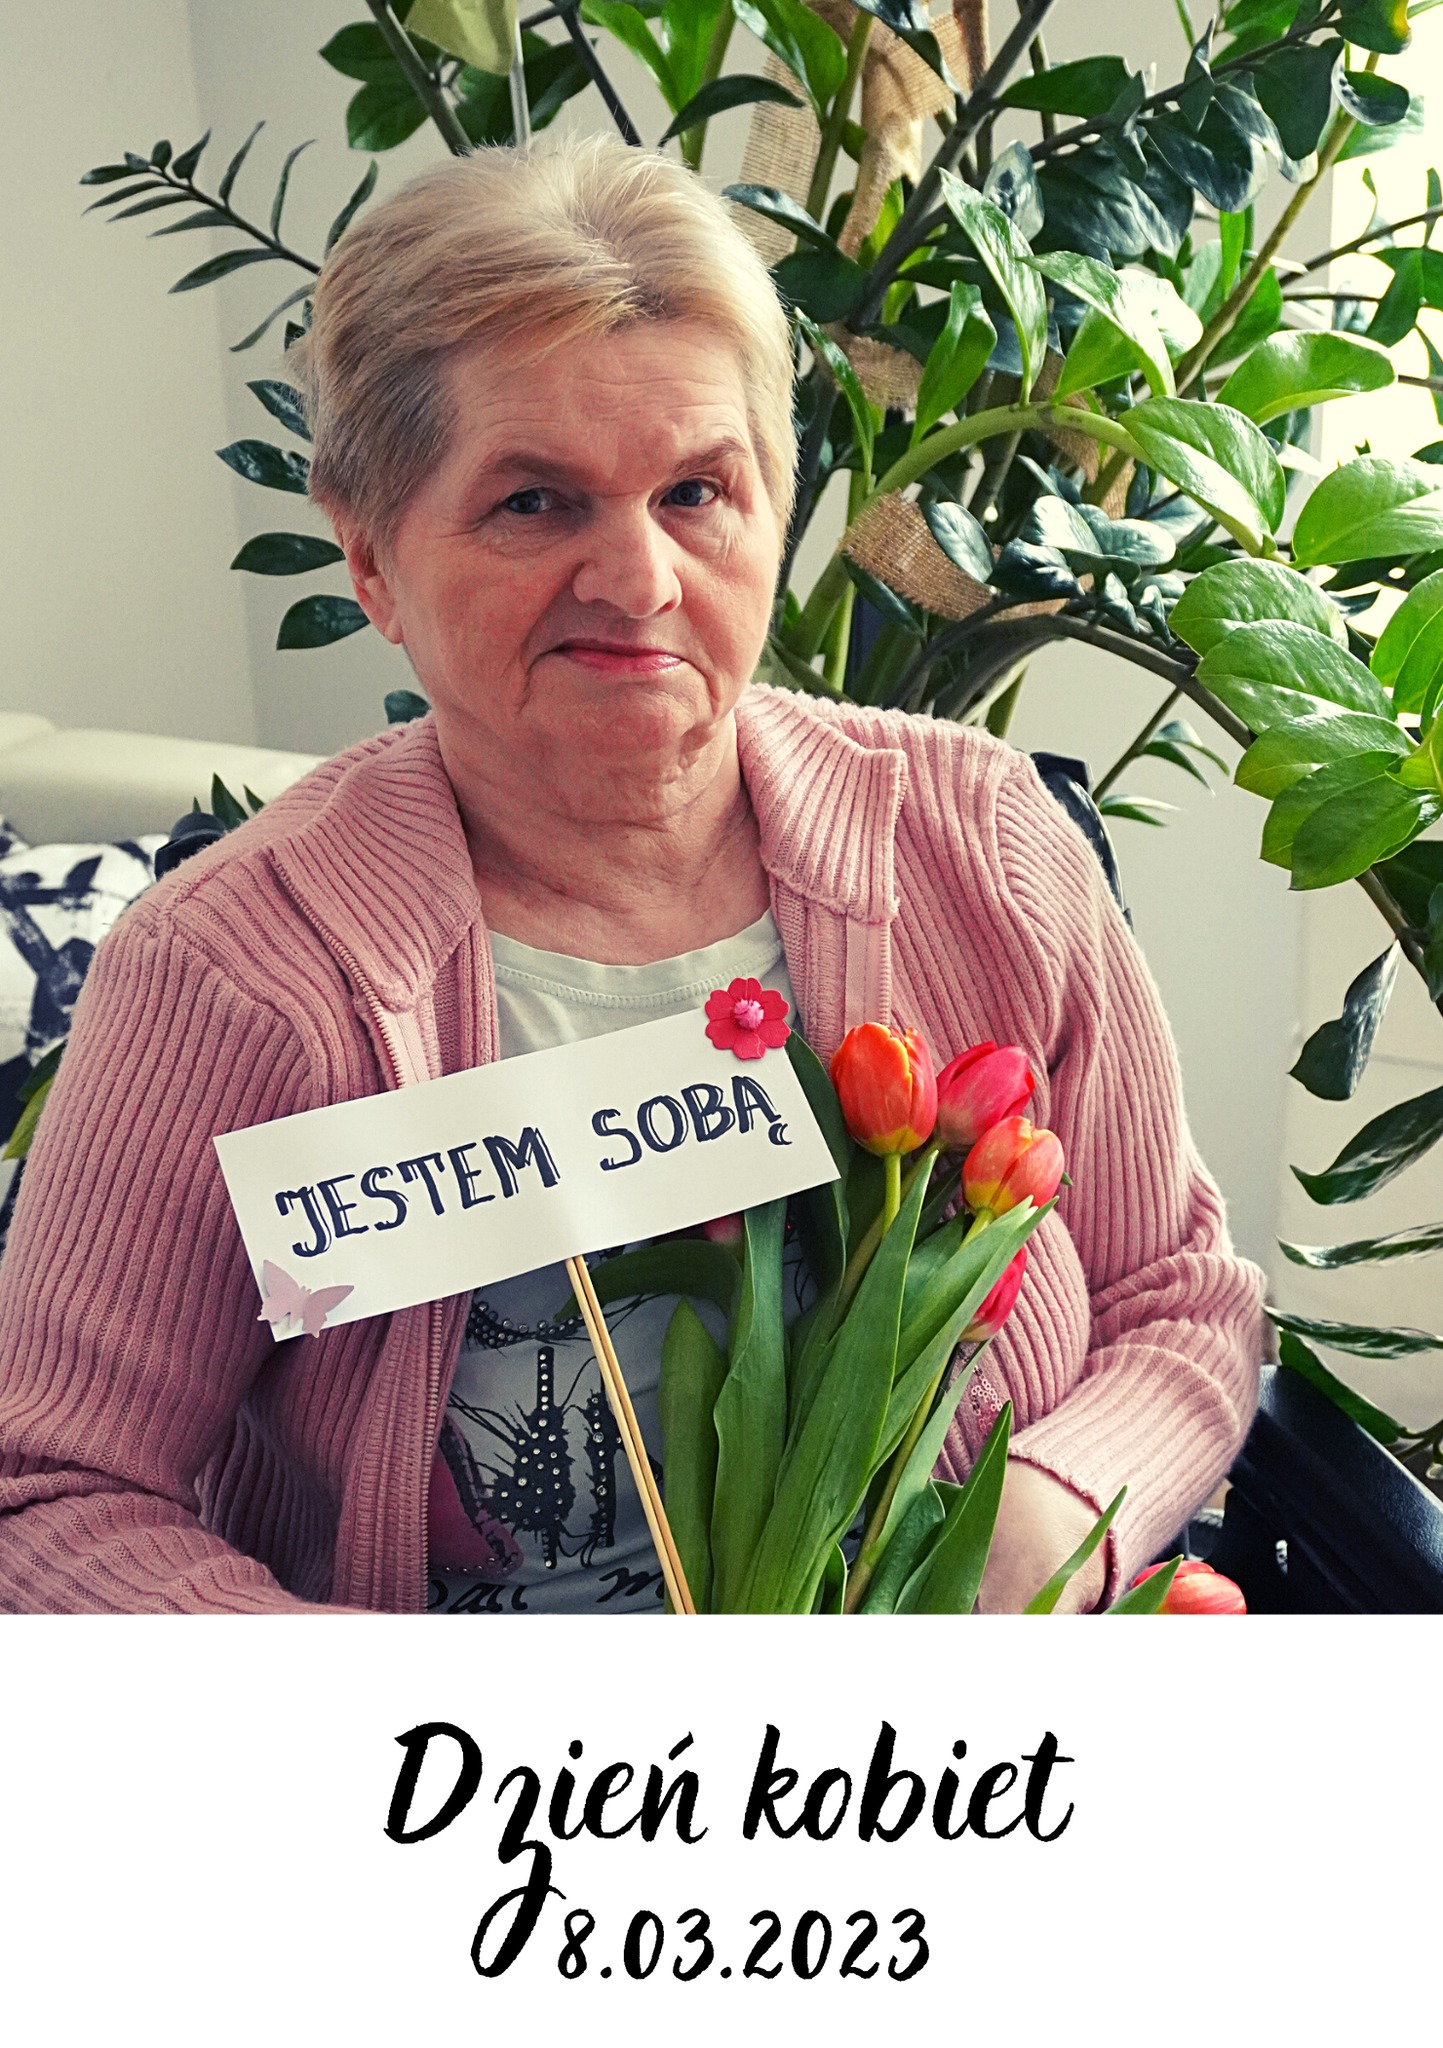 Zdjęcie starsze Pani z kwiatami, która trzyma tabliczkę z napisem "Jestem sobą".